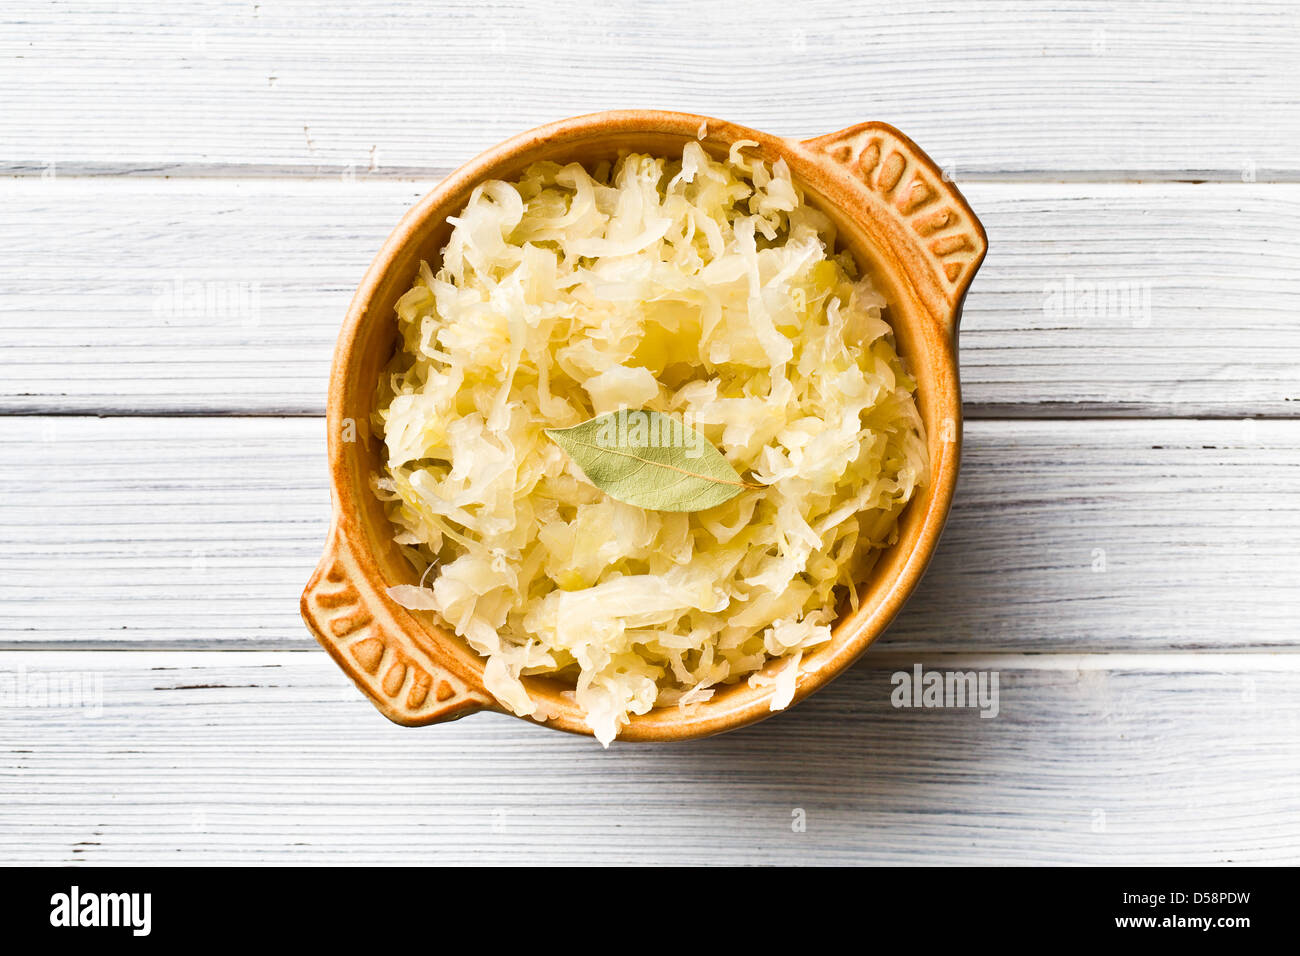 the sauerkraut in ceramic bowl Stock Photo